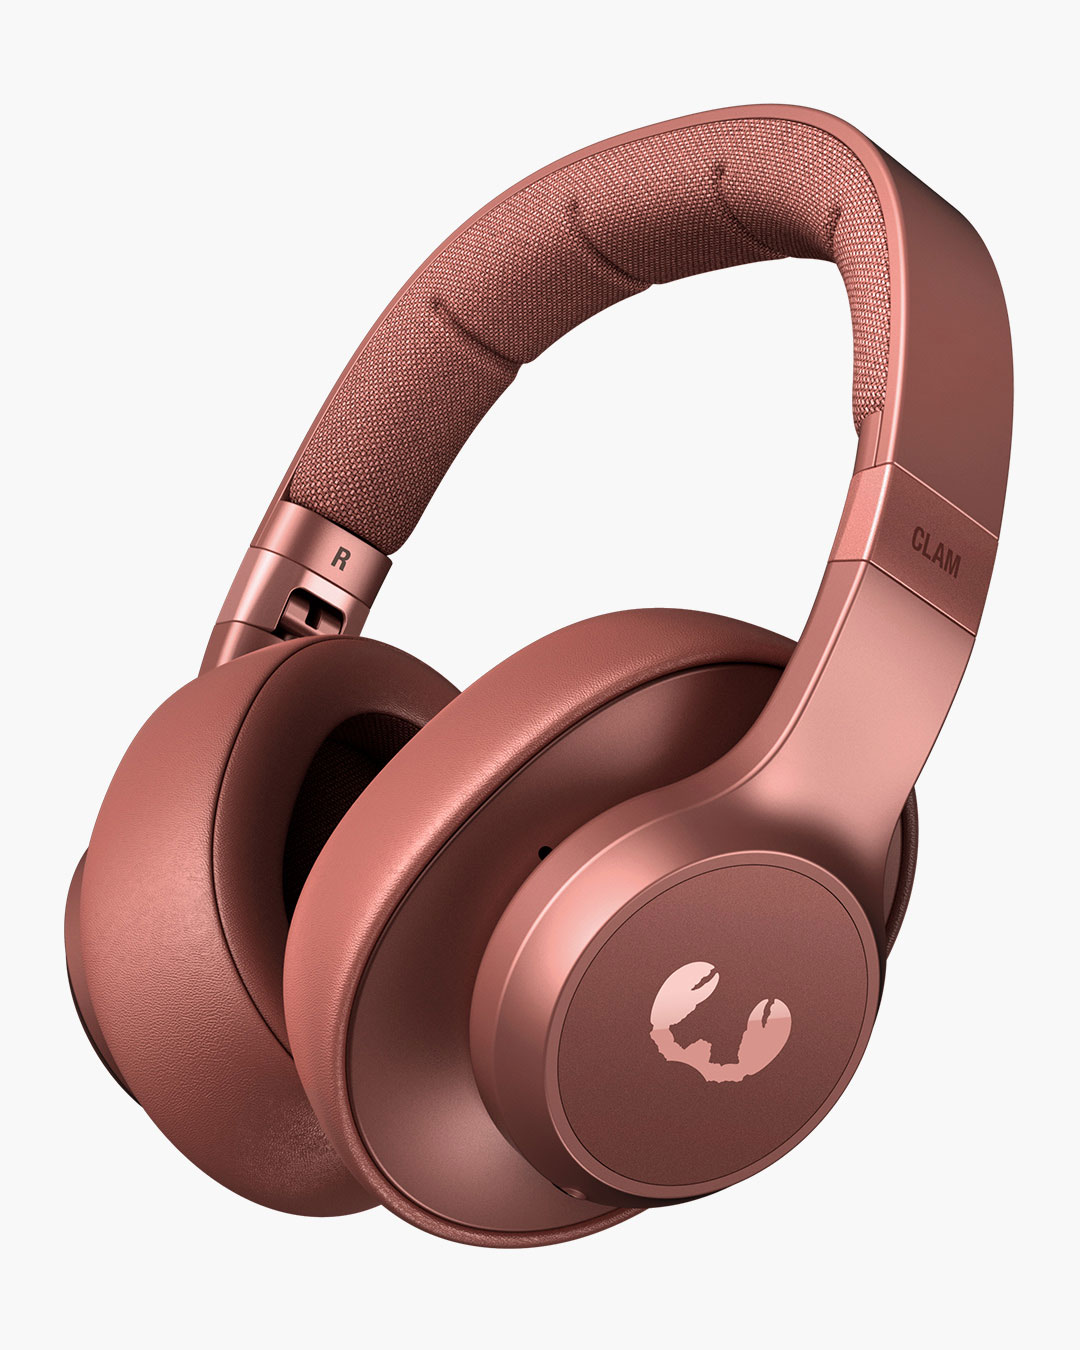 Fresh'n Rebel - Clam - Wireless over-ear headphone - Safari Red - Artikelnummer: 8720249801634